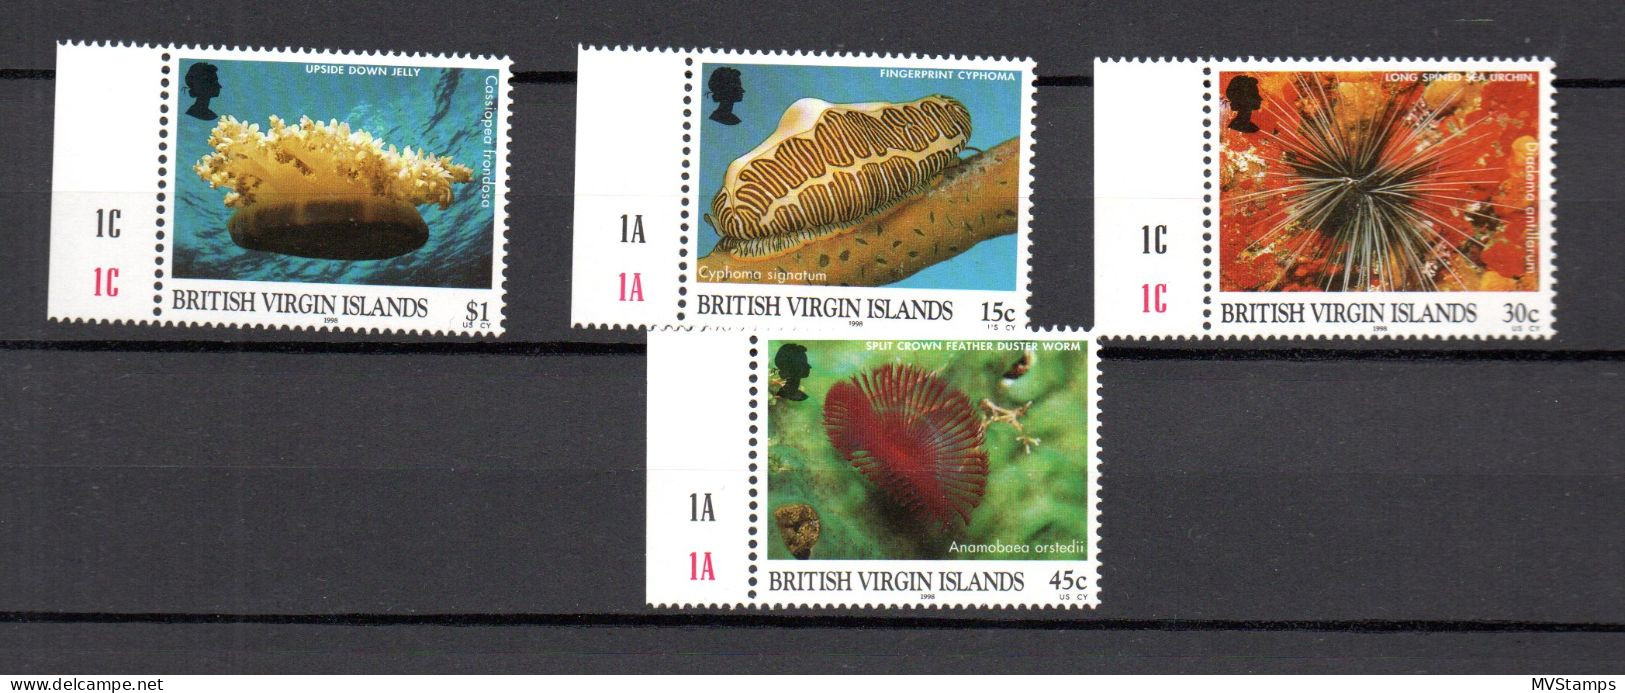 Virgin Islands 1998 Set Sealife/Fish/Meerestiere Stamps (Michel 932/35) MNH - Britse Maagdeneilanden